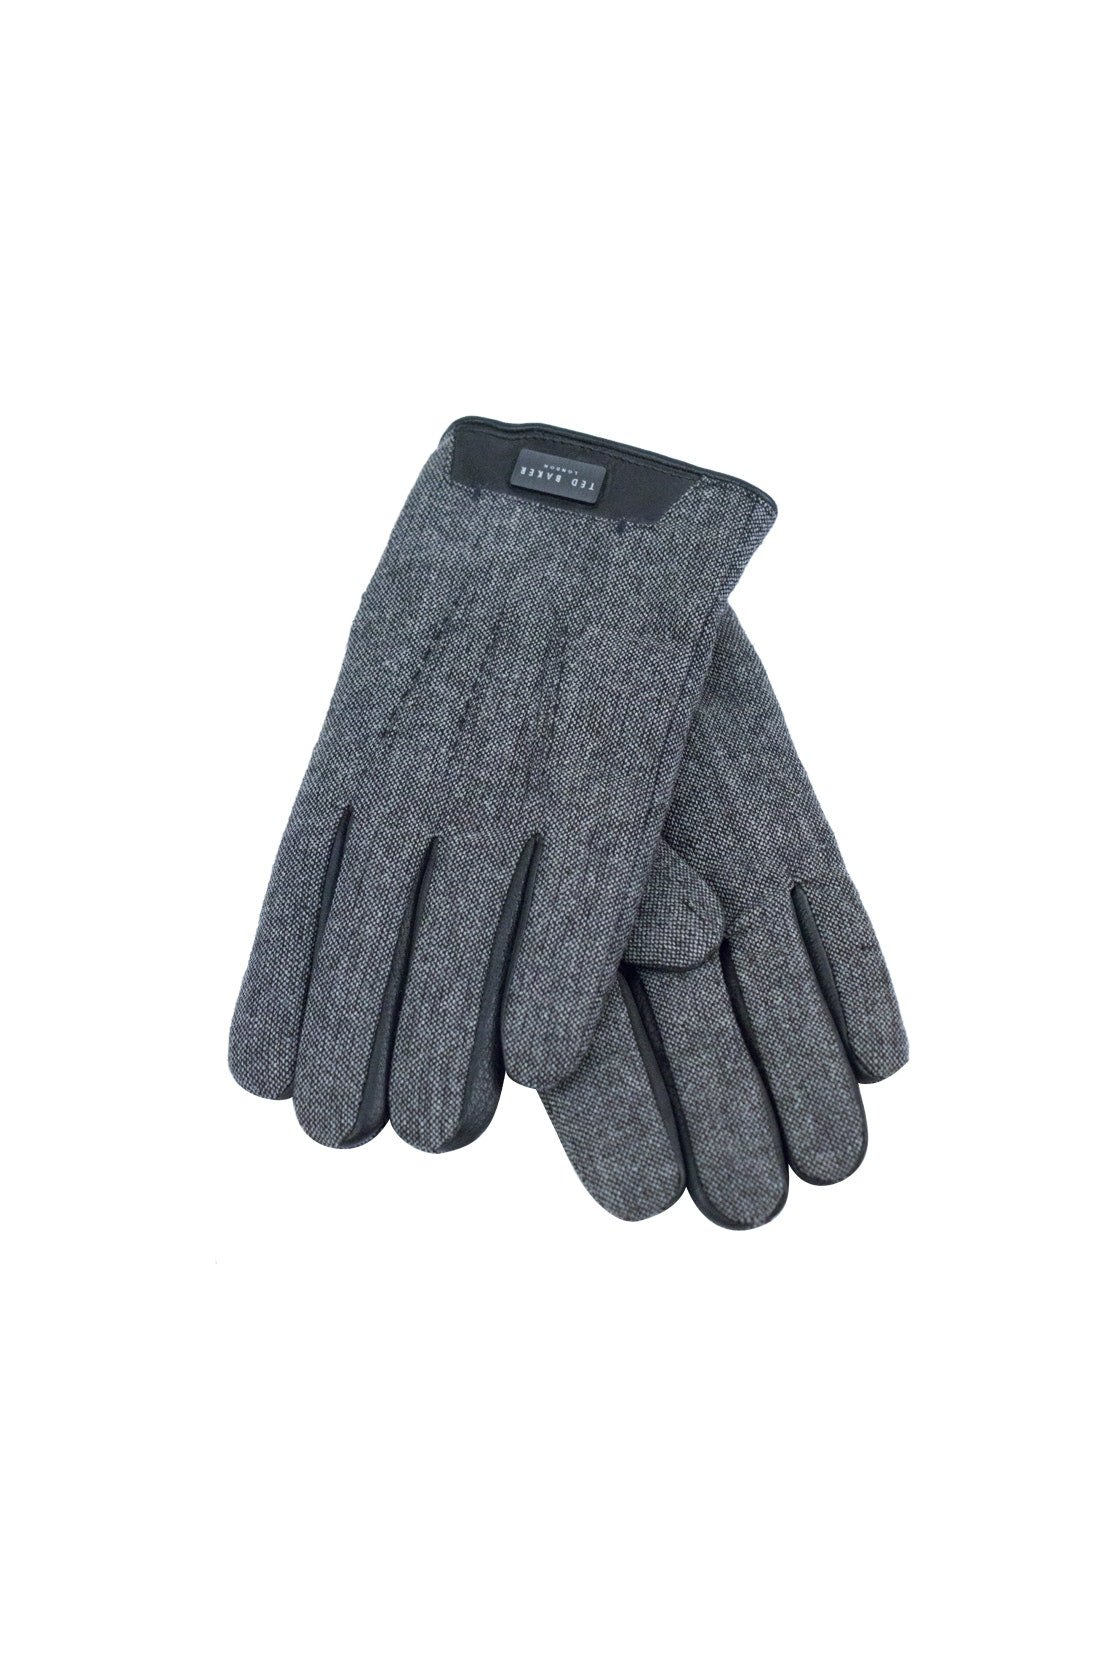 Ted Baker Grey Gloves